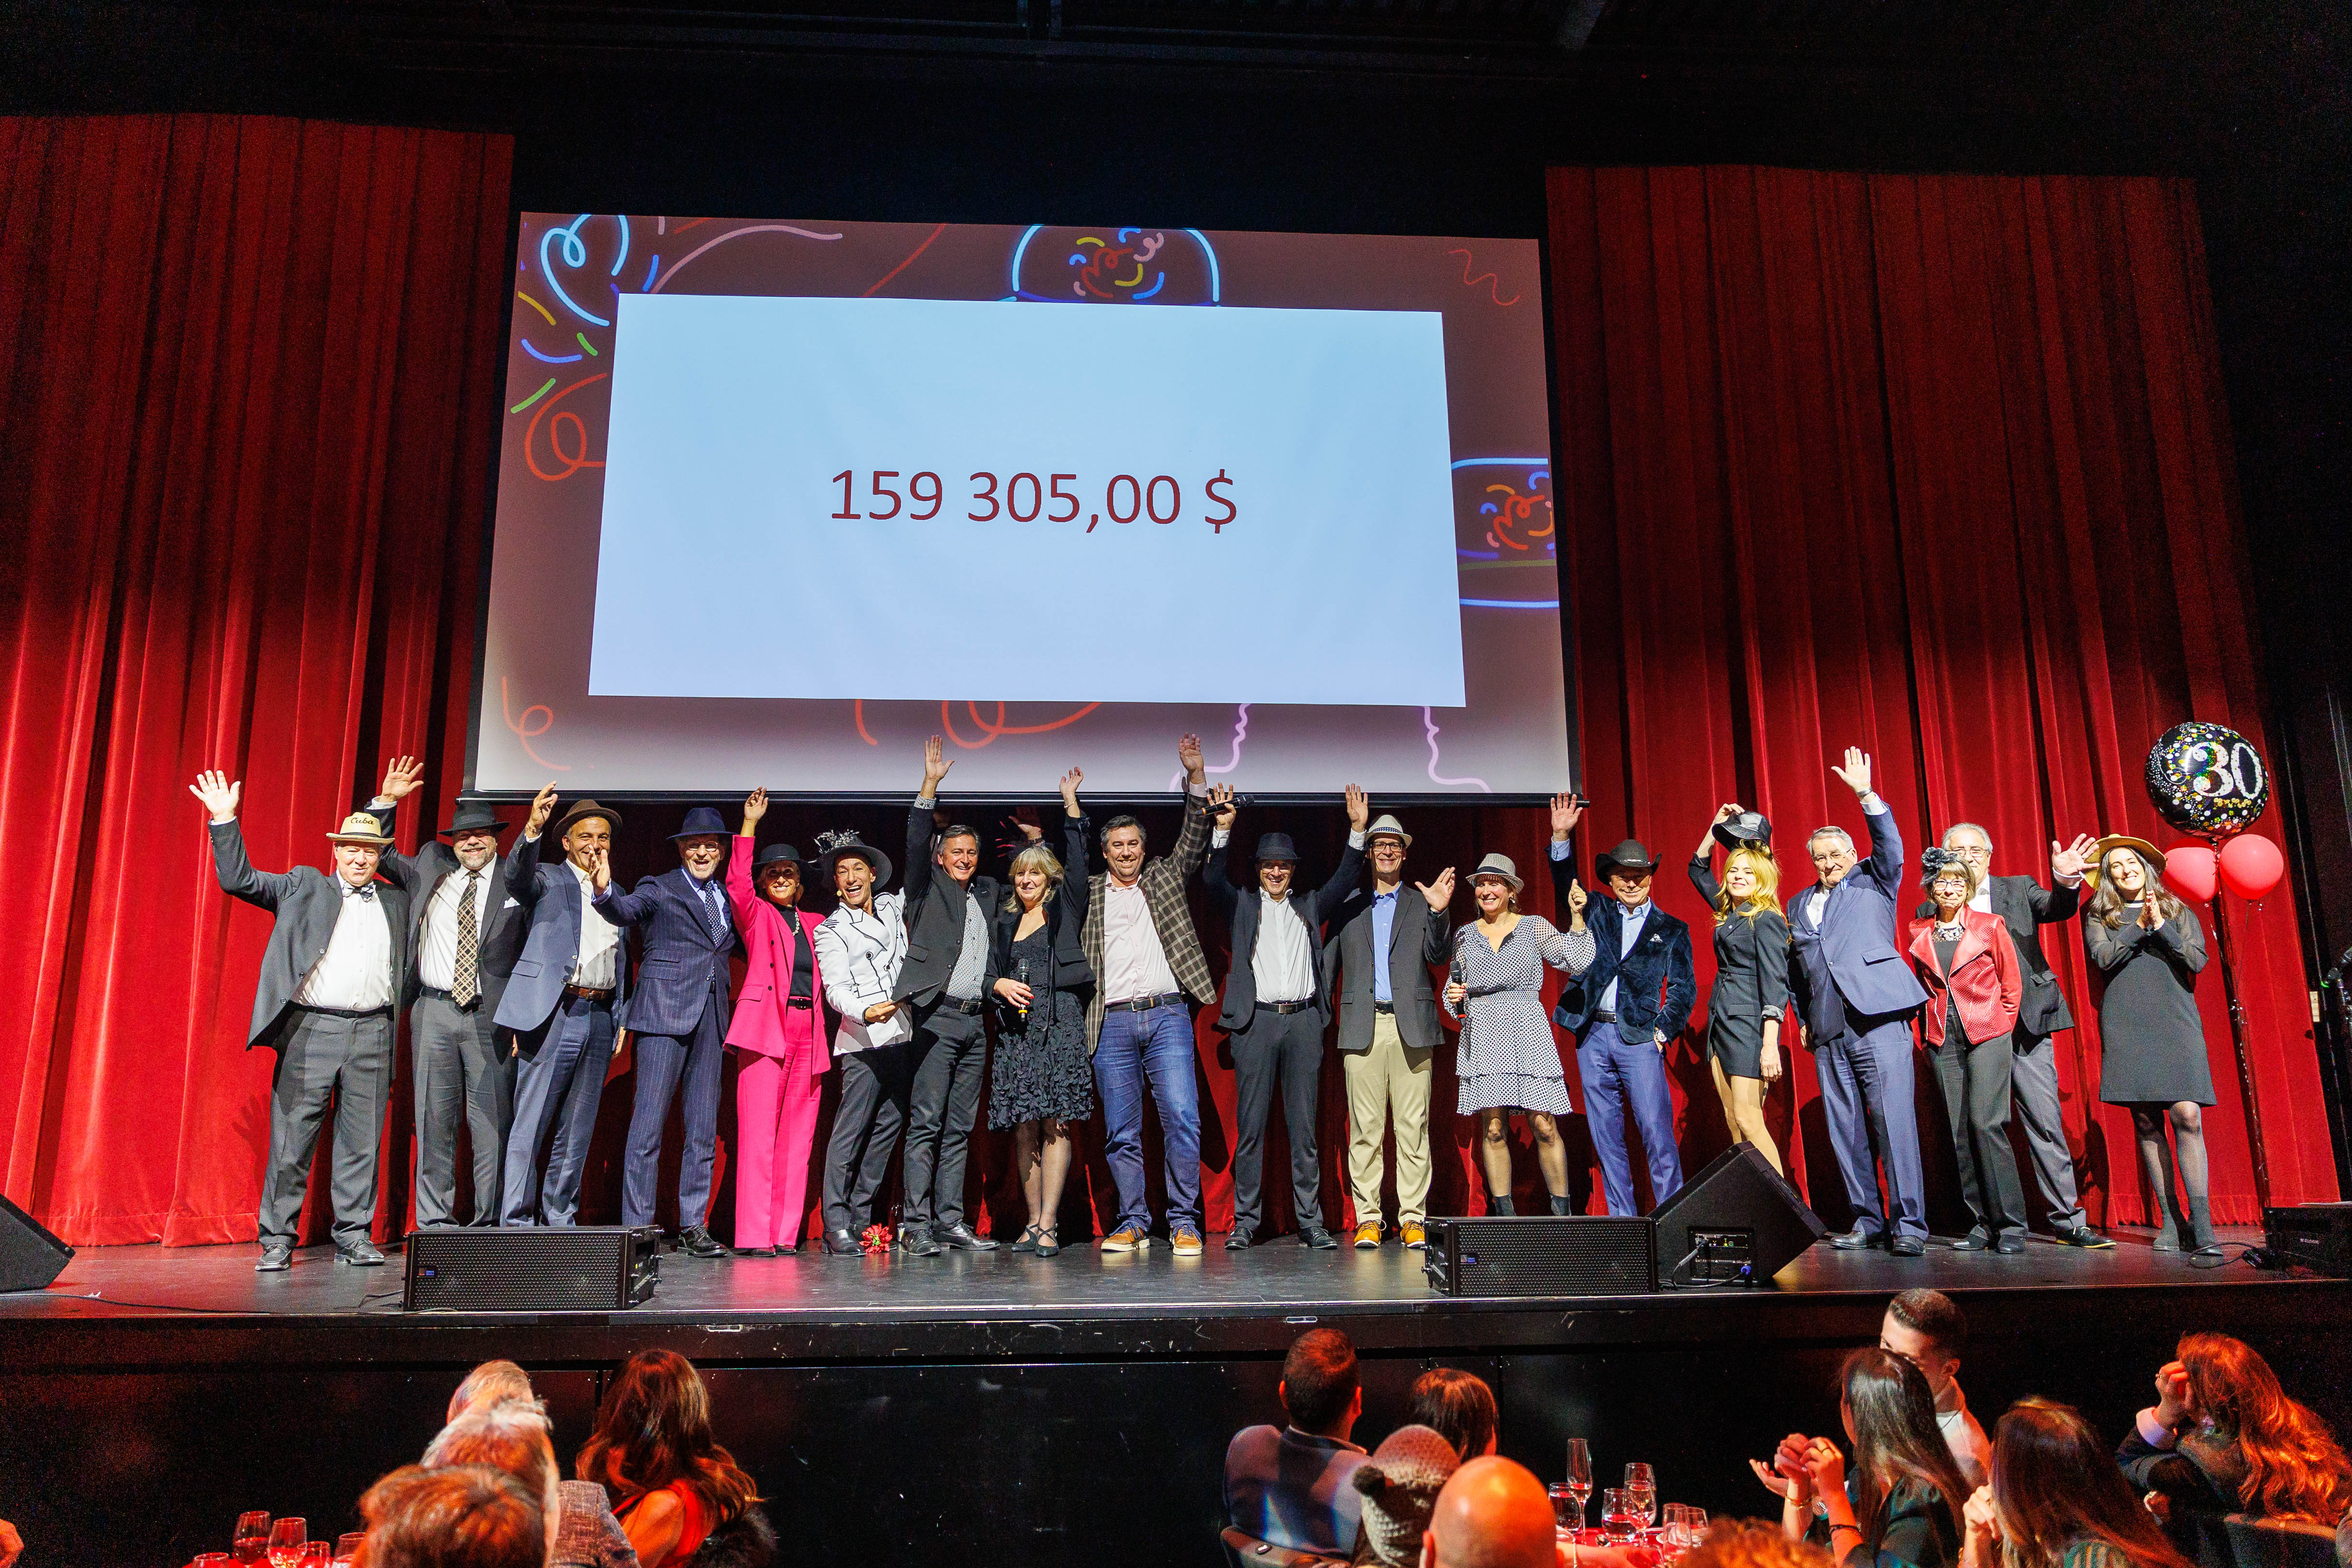 Plus de 160 000 $ amassés au Grand Bal des Chapeaux dans le cadre de la campagne de financement 30e anniversaire de la Fondation NeuroTrauma Marie-Robert